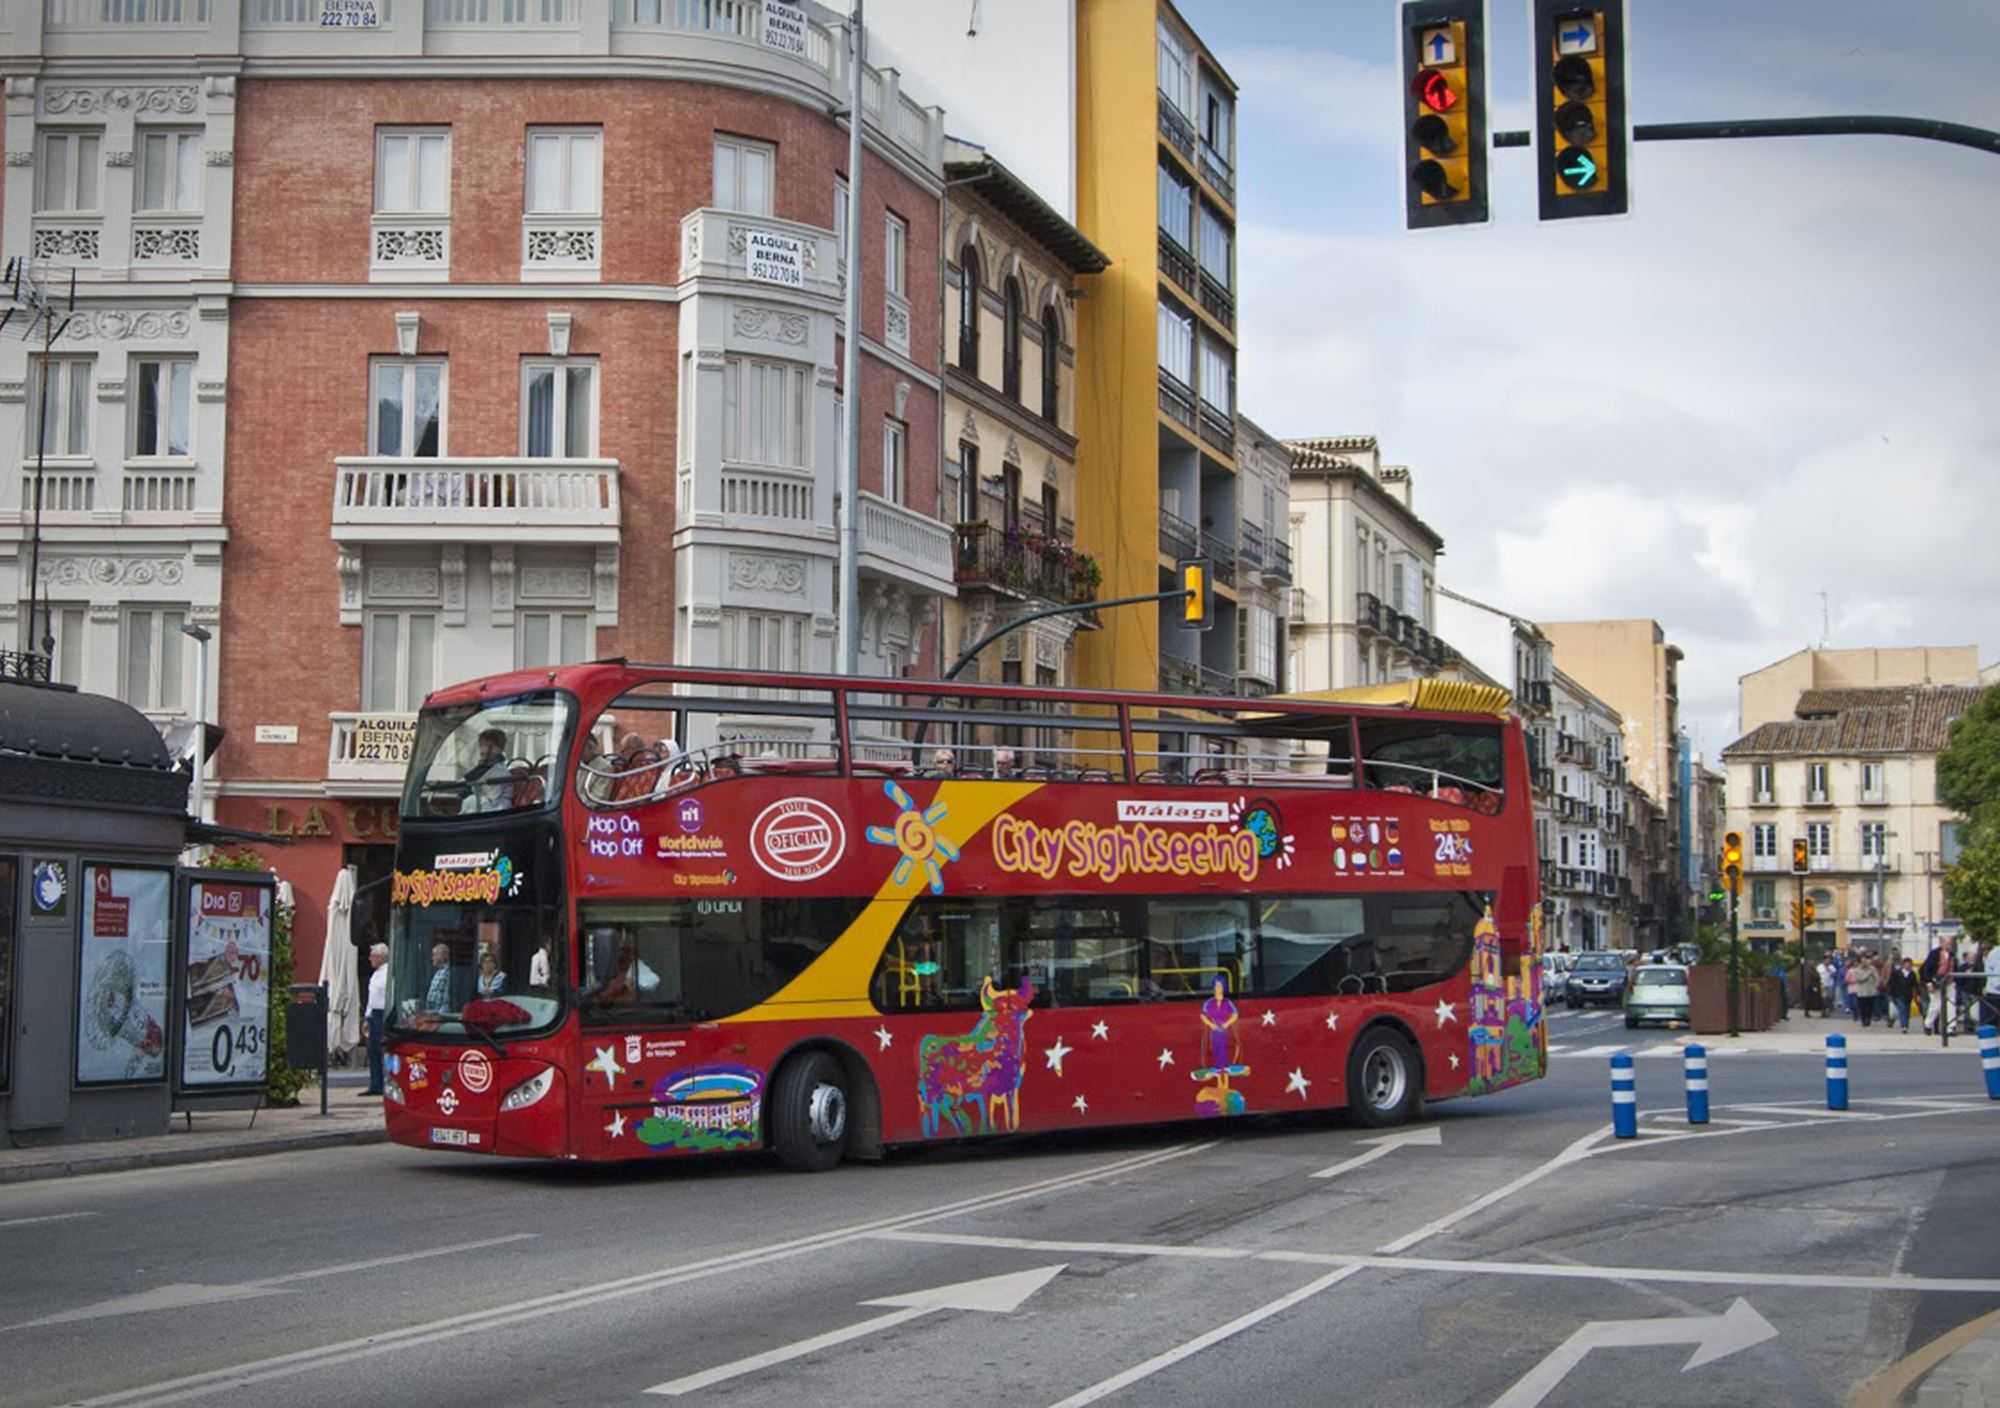 réserver acheter Bus Touristique City Sightseeing Málaga billets visiter